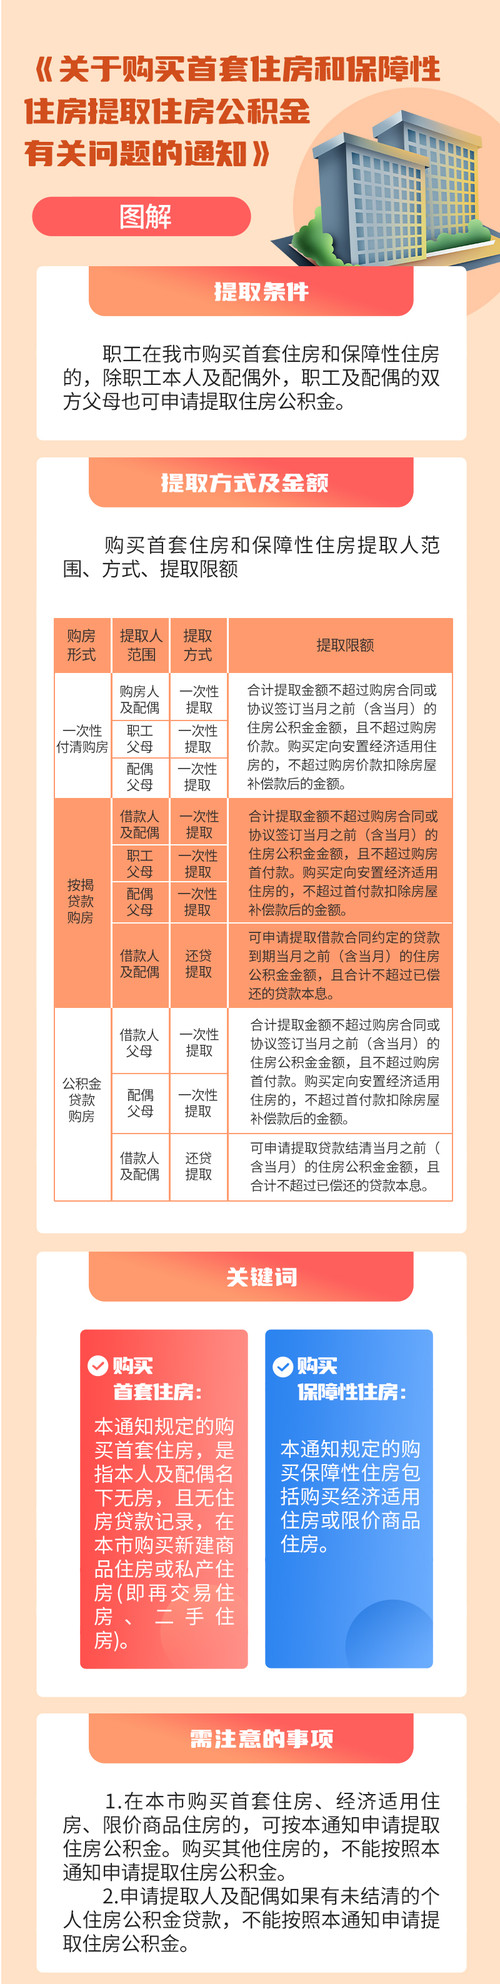 《【恒达娱乐官方登录平台】天津重新印发公积金新政：父母可提取住房公积金支持子女购房》